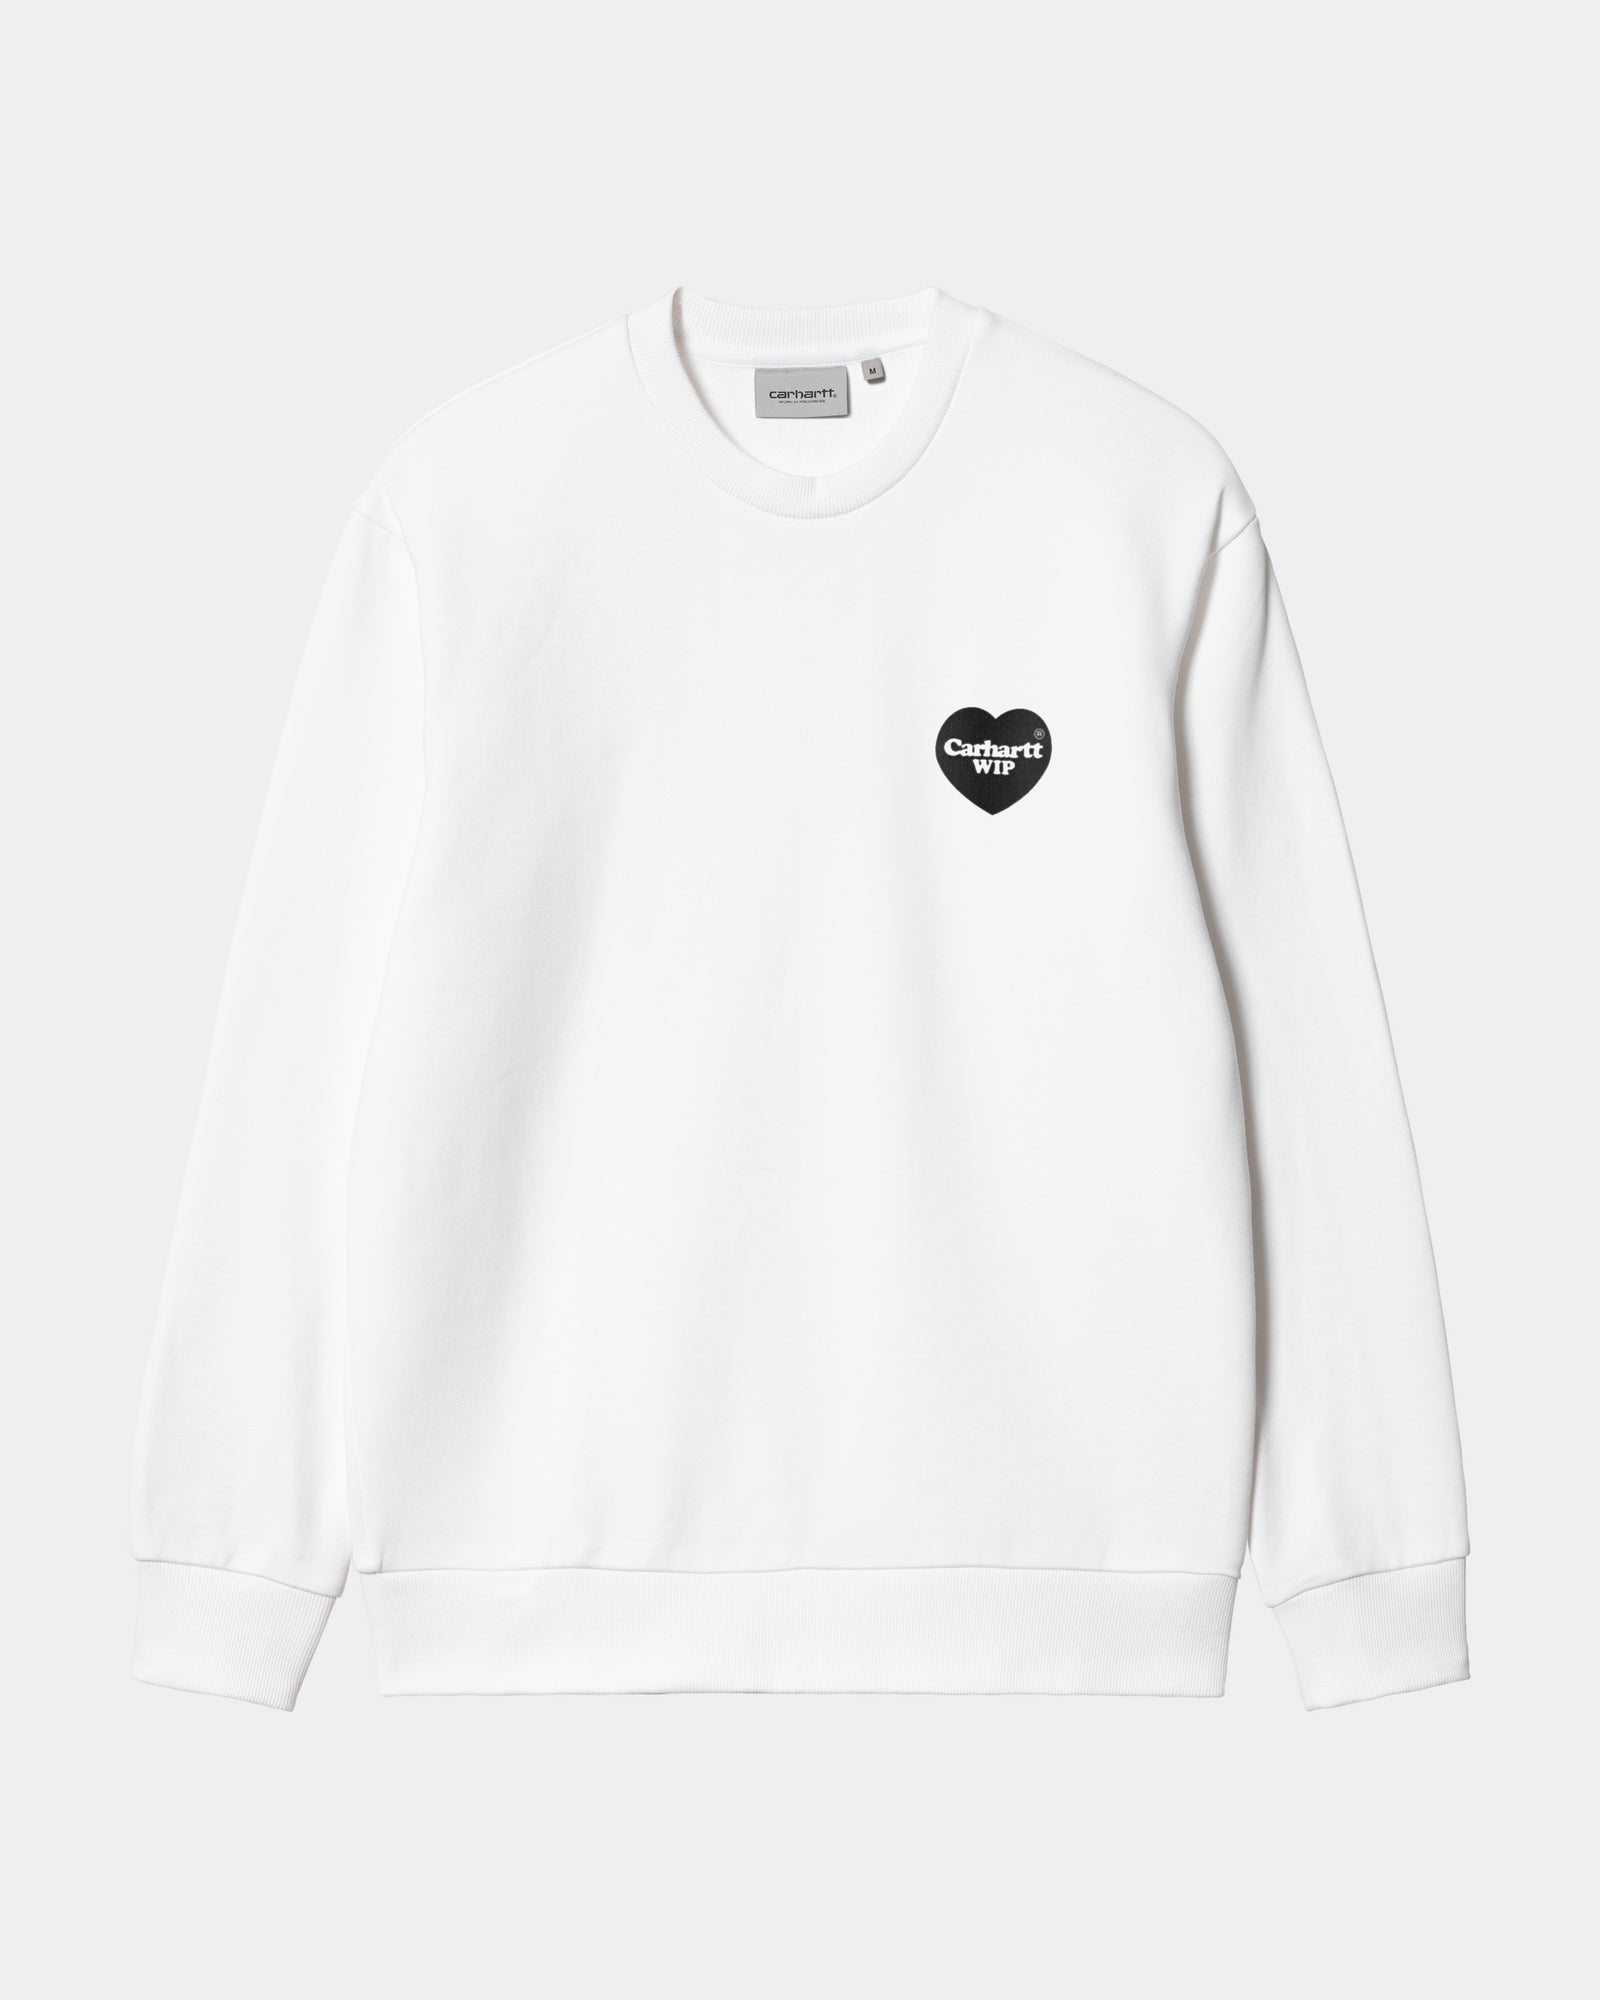 칼하트WIP Carhartt Heart Bandana Sweatshirt,White / Black